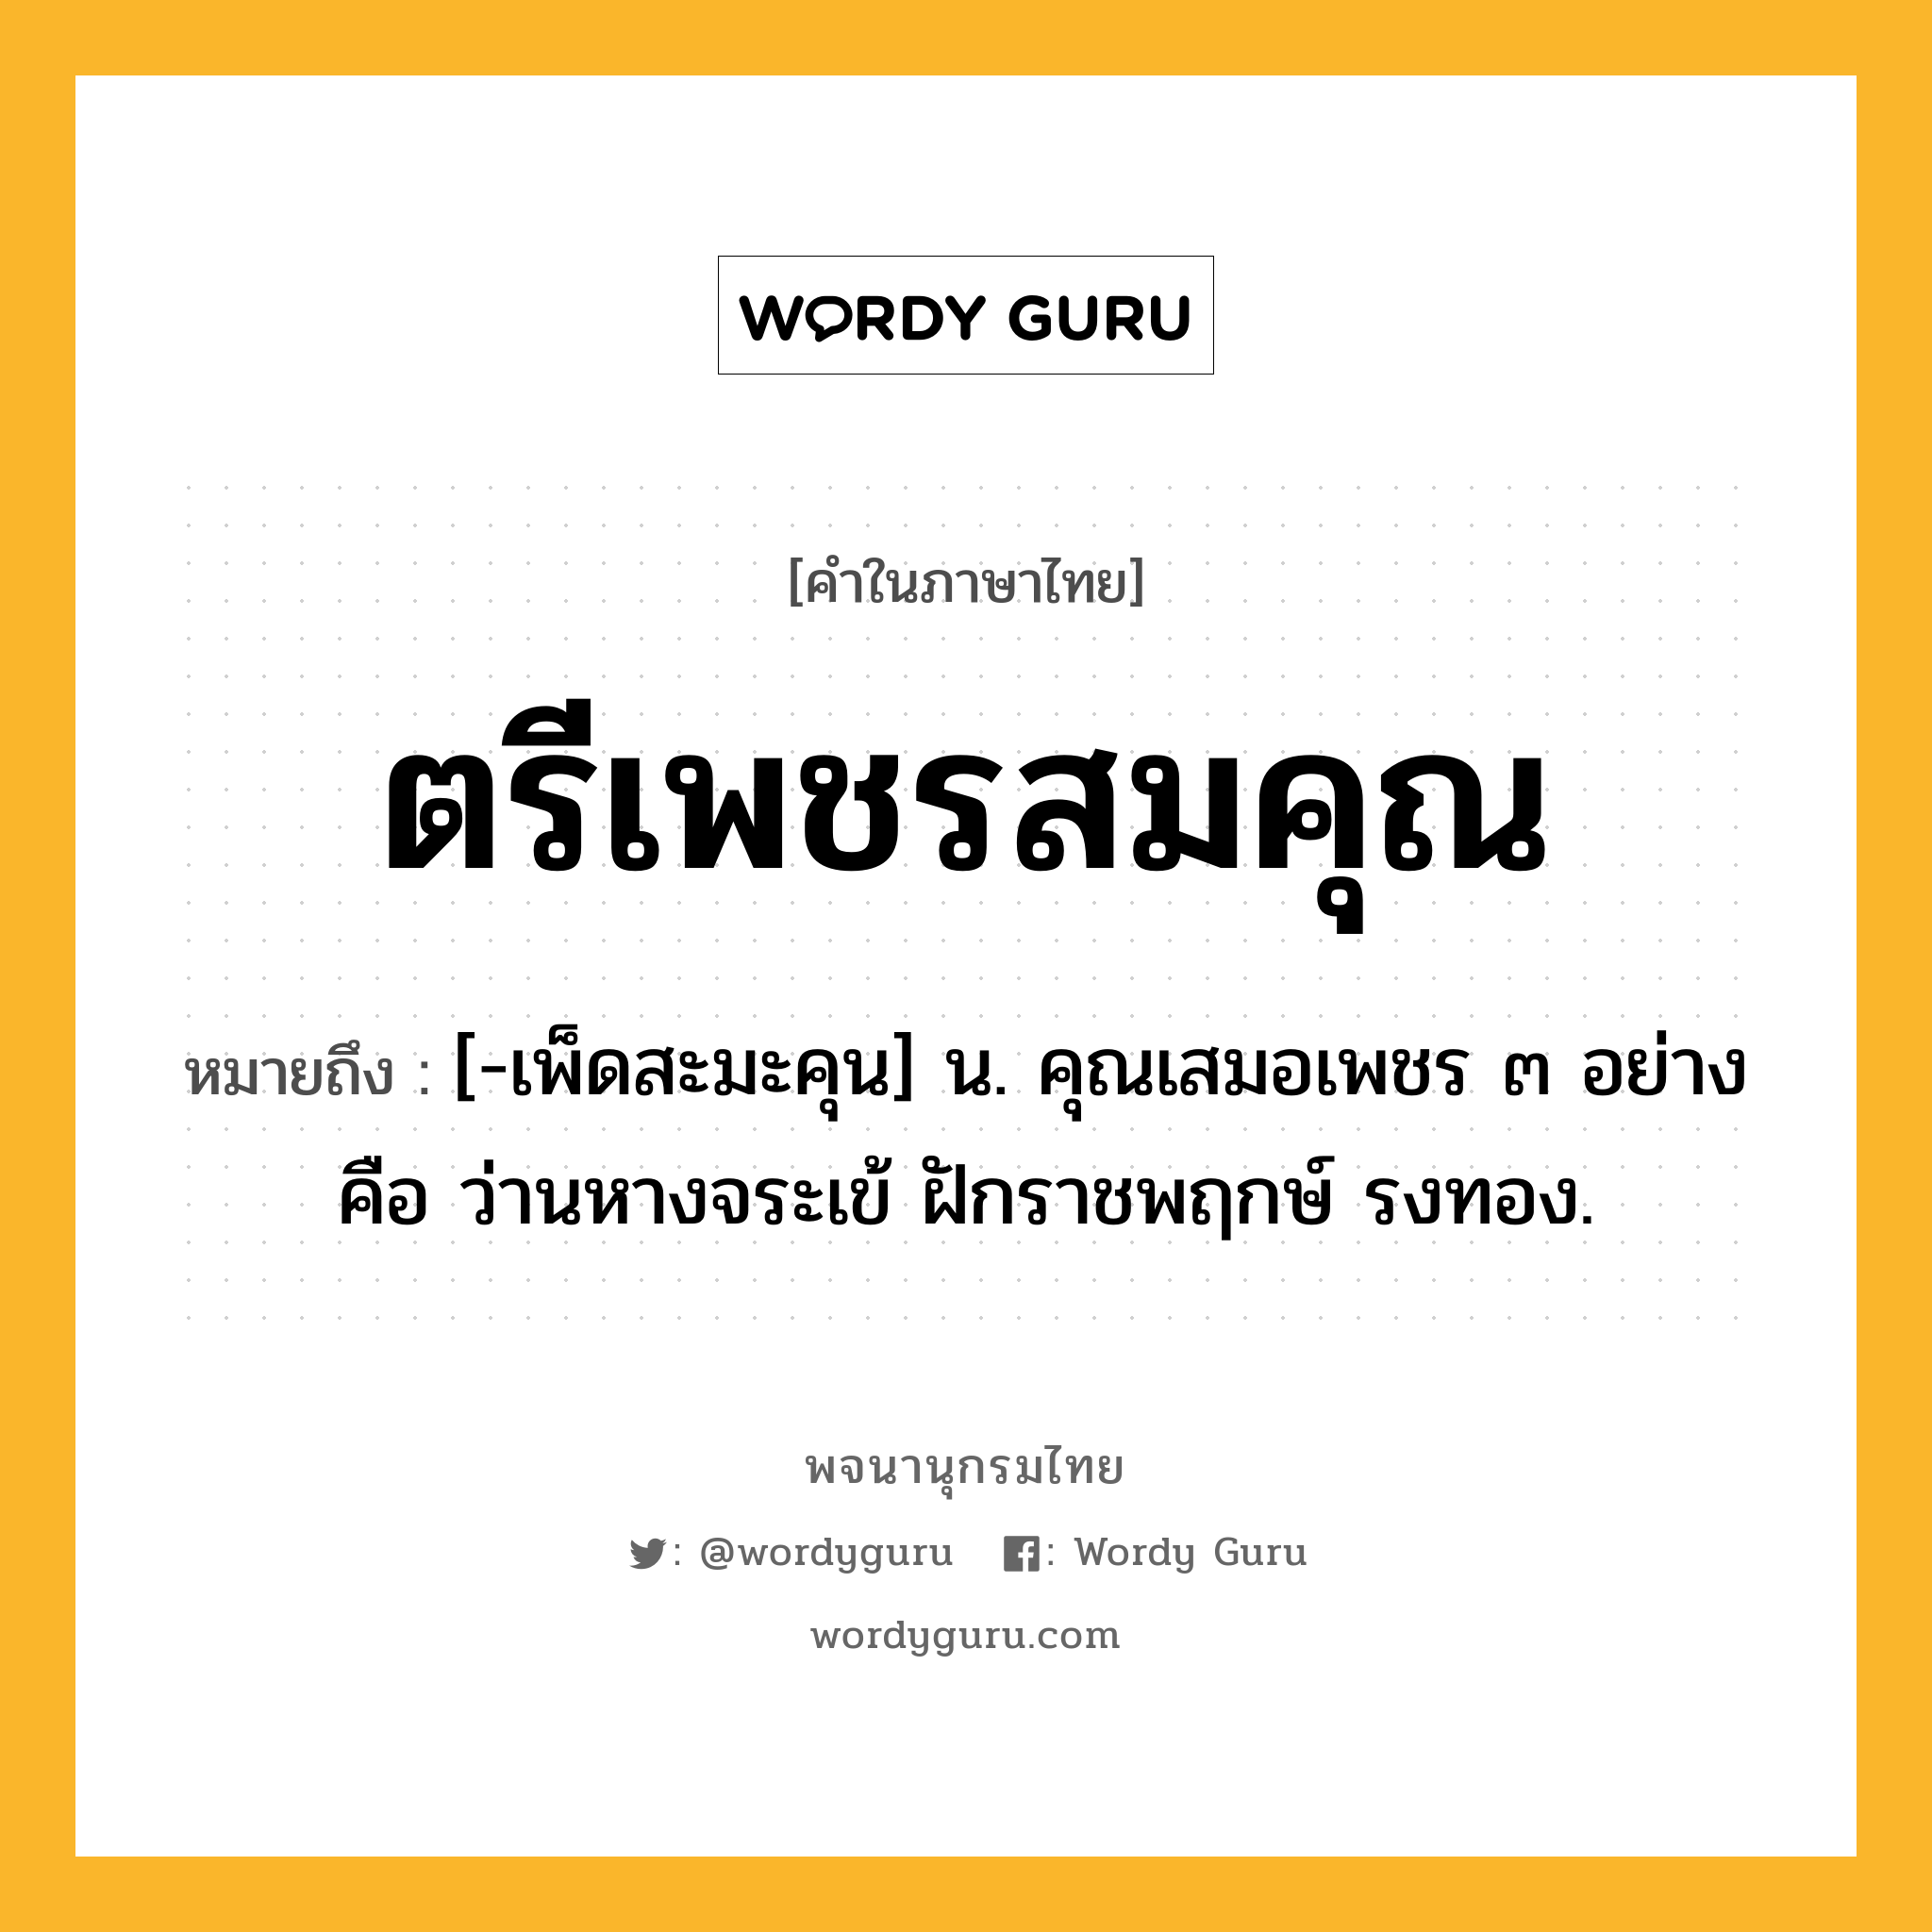 ตรีเพชรสมคุณ หมายถึงอะไร?, คำในภาษาไทย ตรีเพชรสมคุณ หมายถึง [-เพ็ดสะมะคุน] น. คุณเสมอเพชร ๓ อย่าง คือ ว่านหางจระเข้ ฝักราชพฤกษ์ รงทอง.